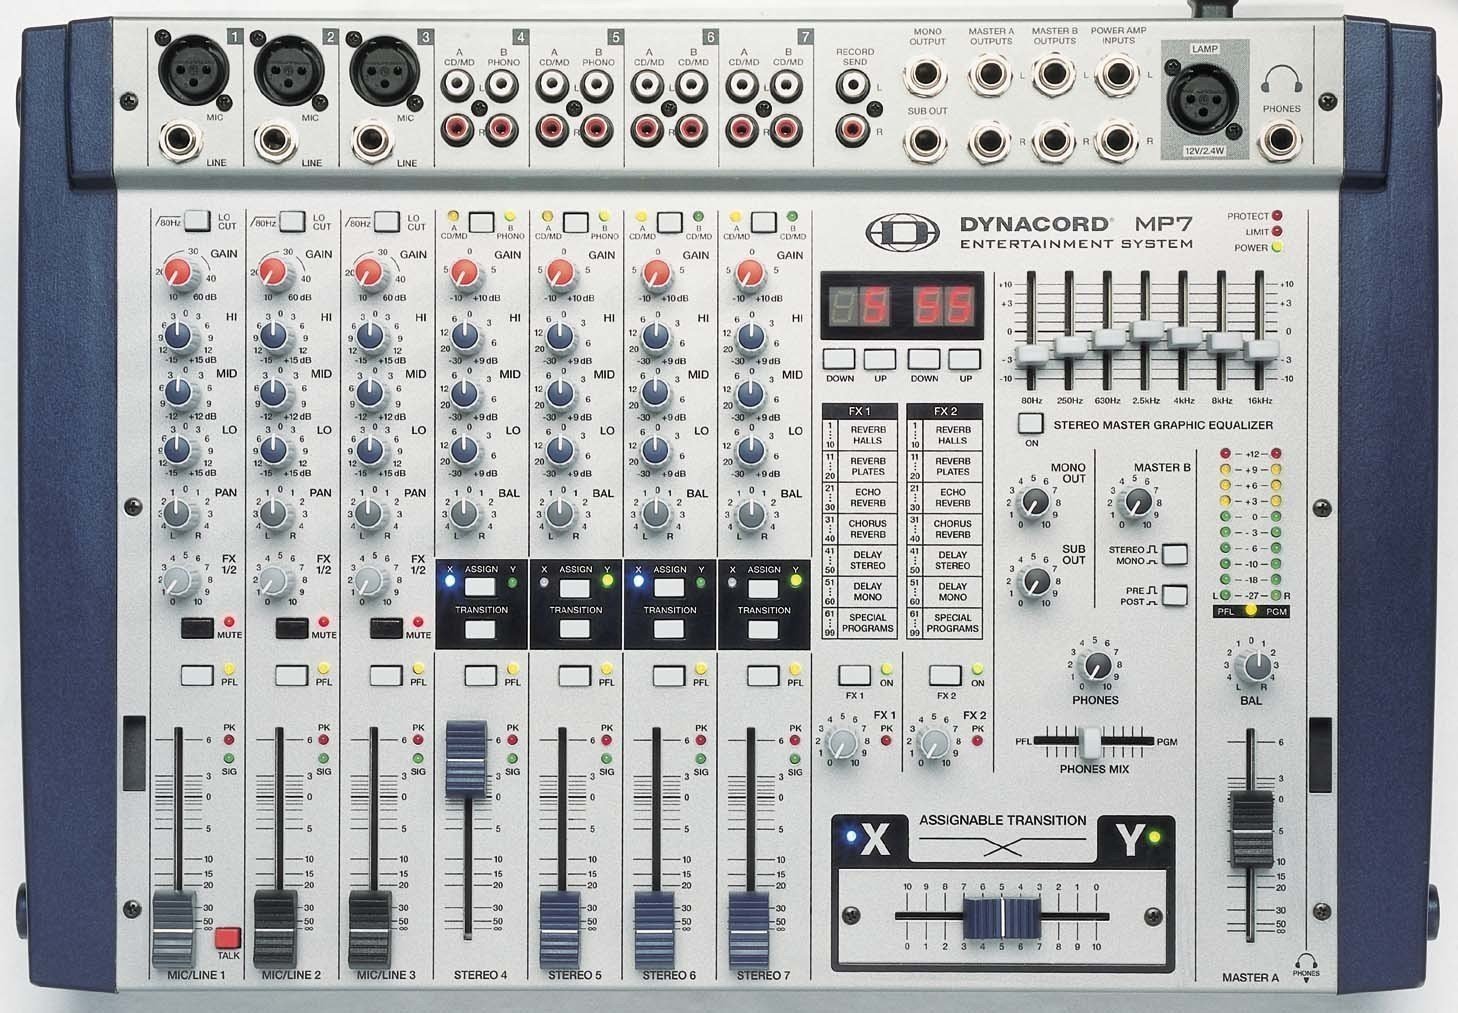 Tables de mixage amplifiée Dynacord MP7 Entertainment system